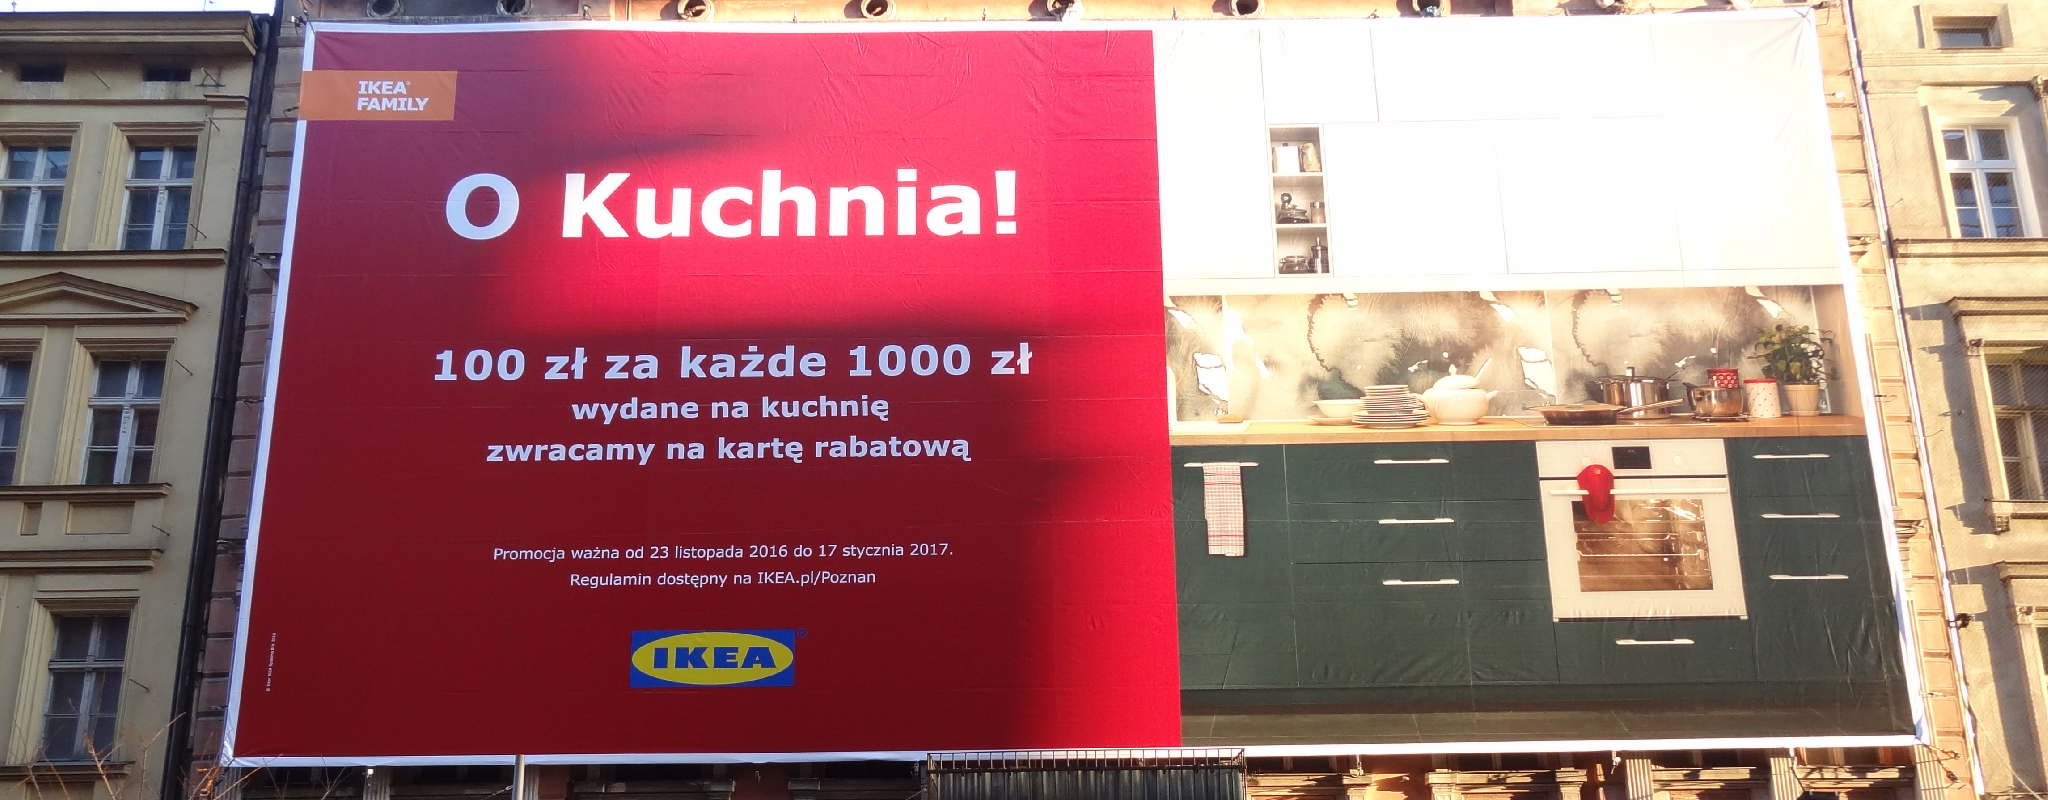 Powierzchnia wielkoformatowa Poznań Półwiejska Ikea